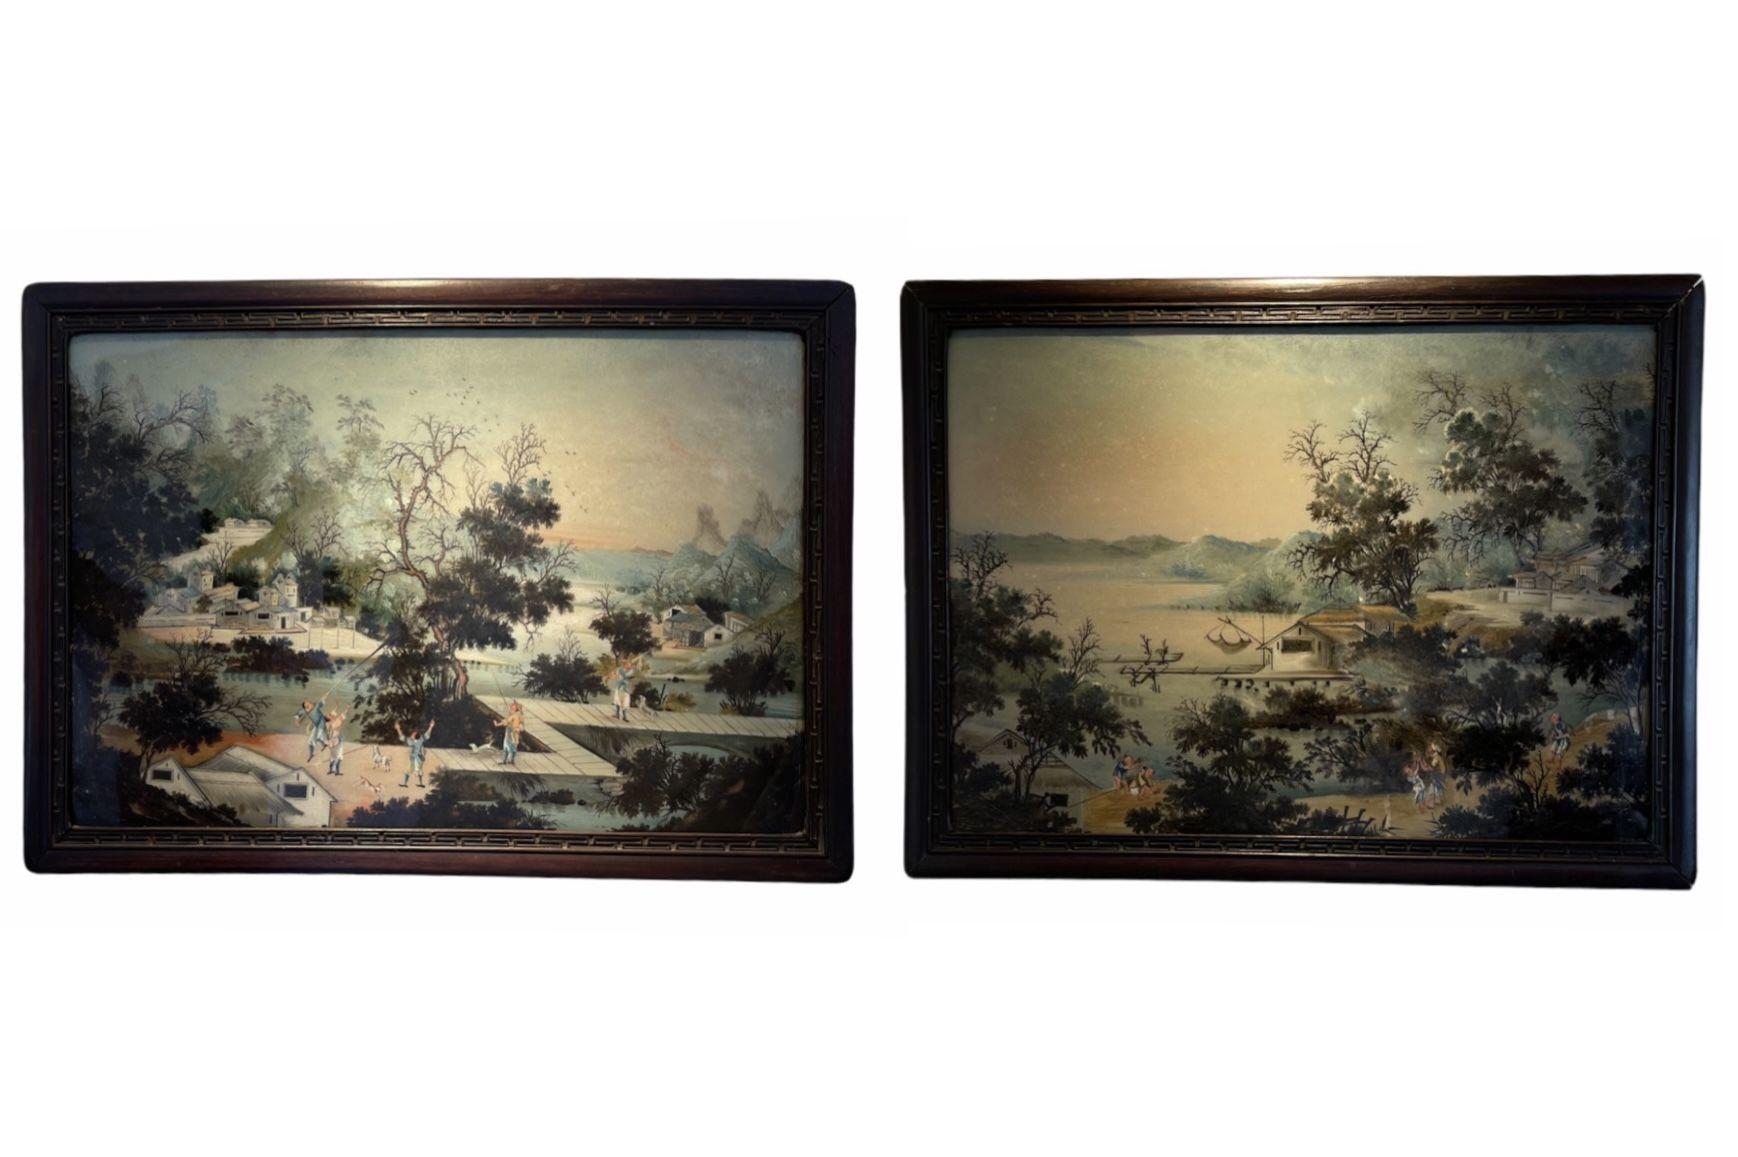 Cette paire de peintures sur verre inversé est une pièce unique. La scène a été magnifiquement rendue, avec une grande attention portée aux détails. Ces pièces ont été créées en Chine sous la dynastie Qing (1644-1912). La peinture sur verre inversé